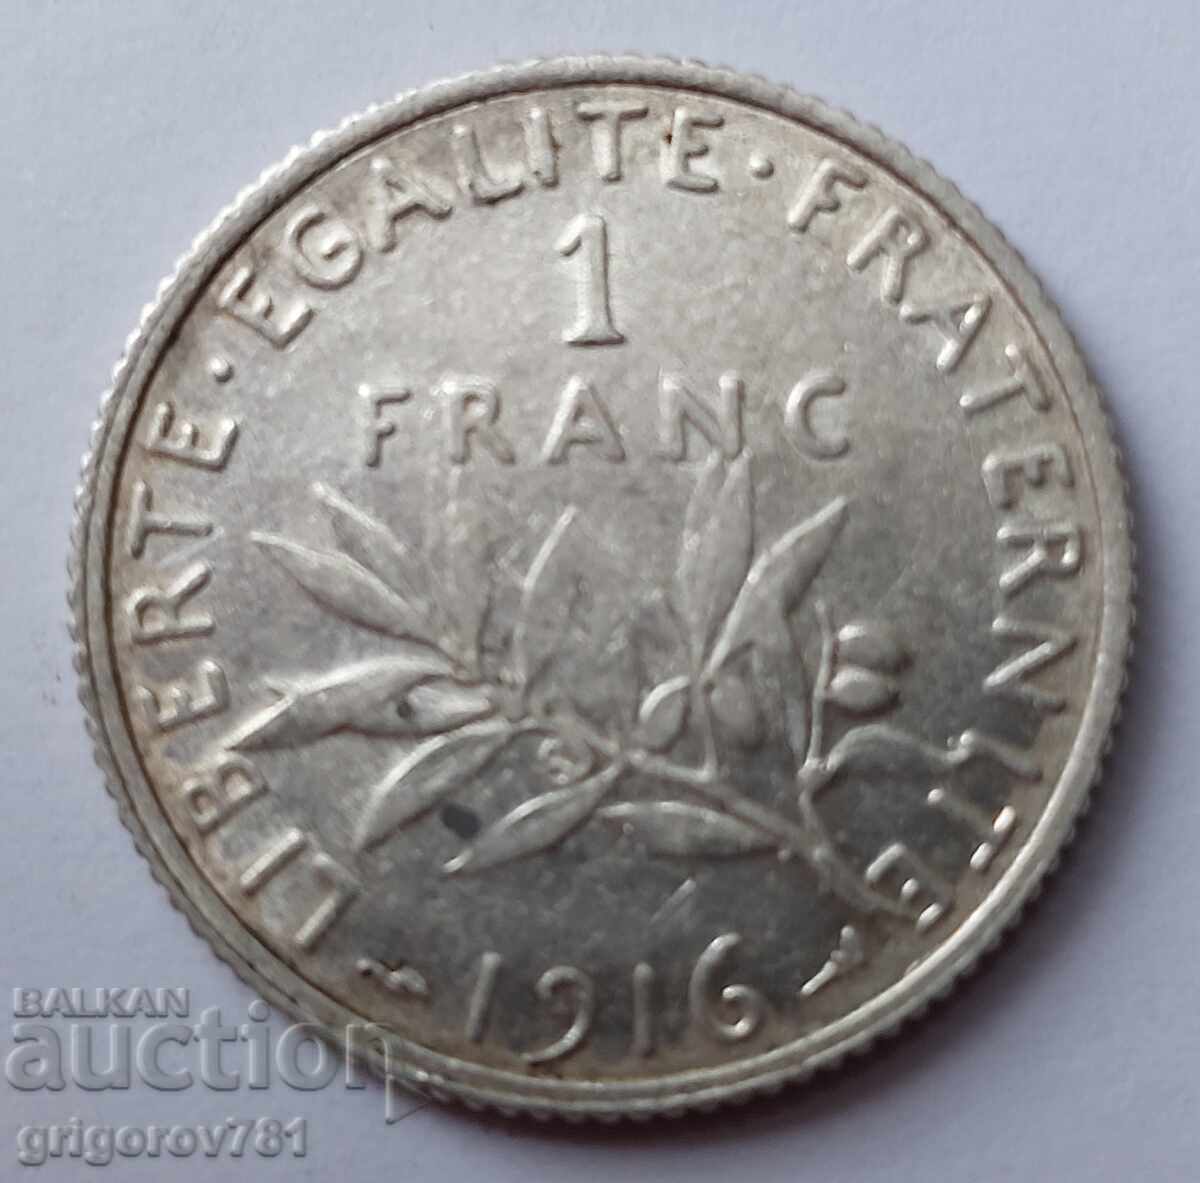 Ασημένιο 1 φράγκου Γαλλία 1916 - ασημένιο νόμισμα №6